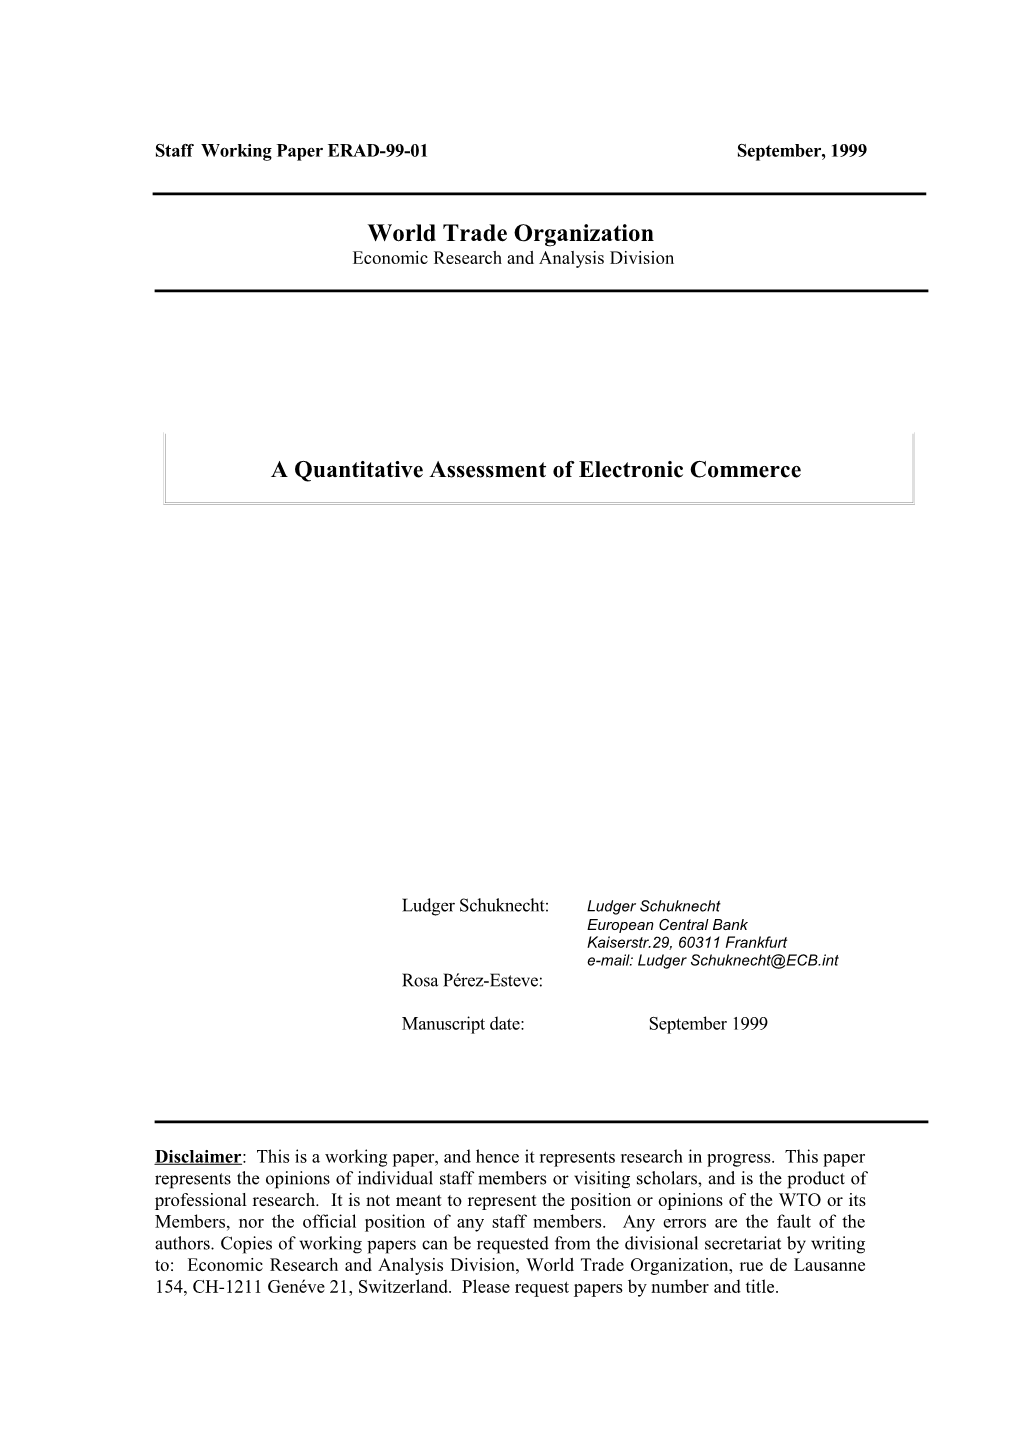 A Quantitative Assessment of Electronic Commerce